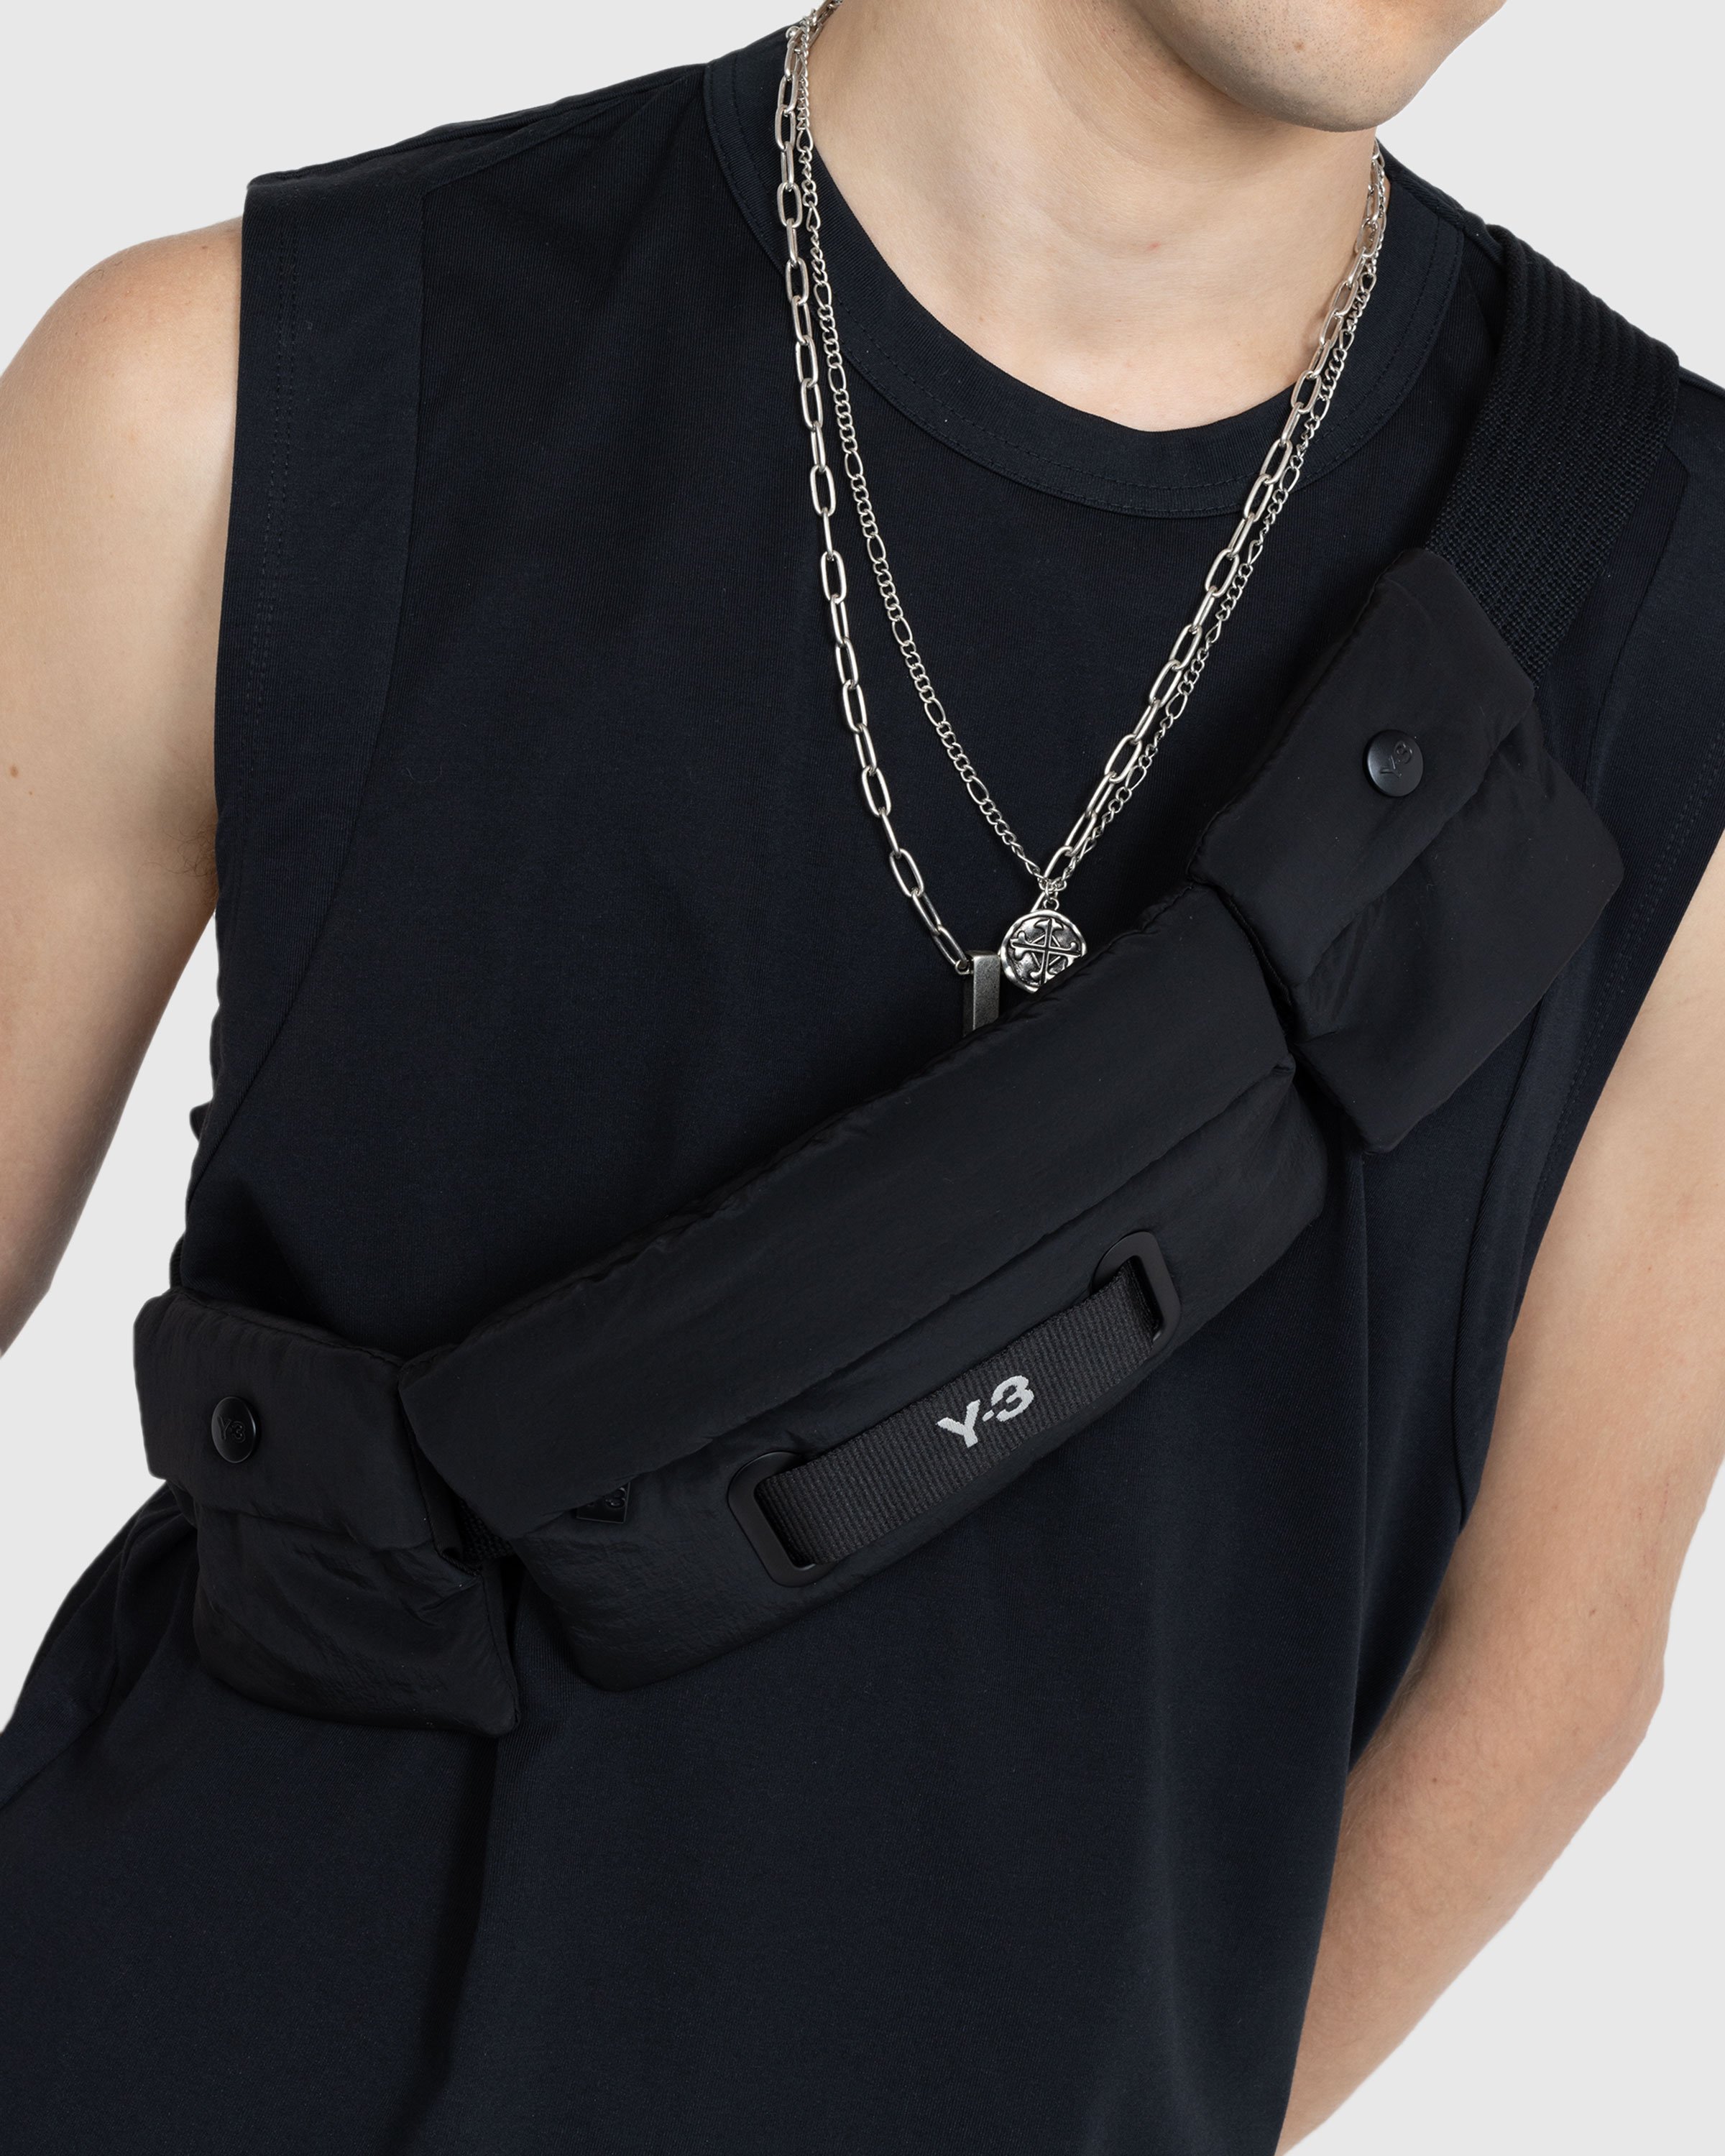 Y-3 - Crinkled Crossbody Bag Black - Accessories - Black - Image 3